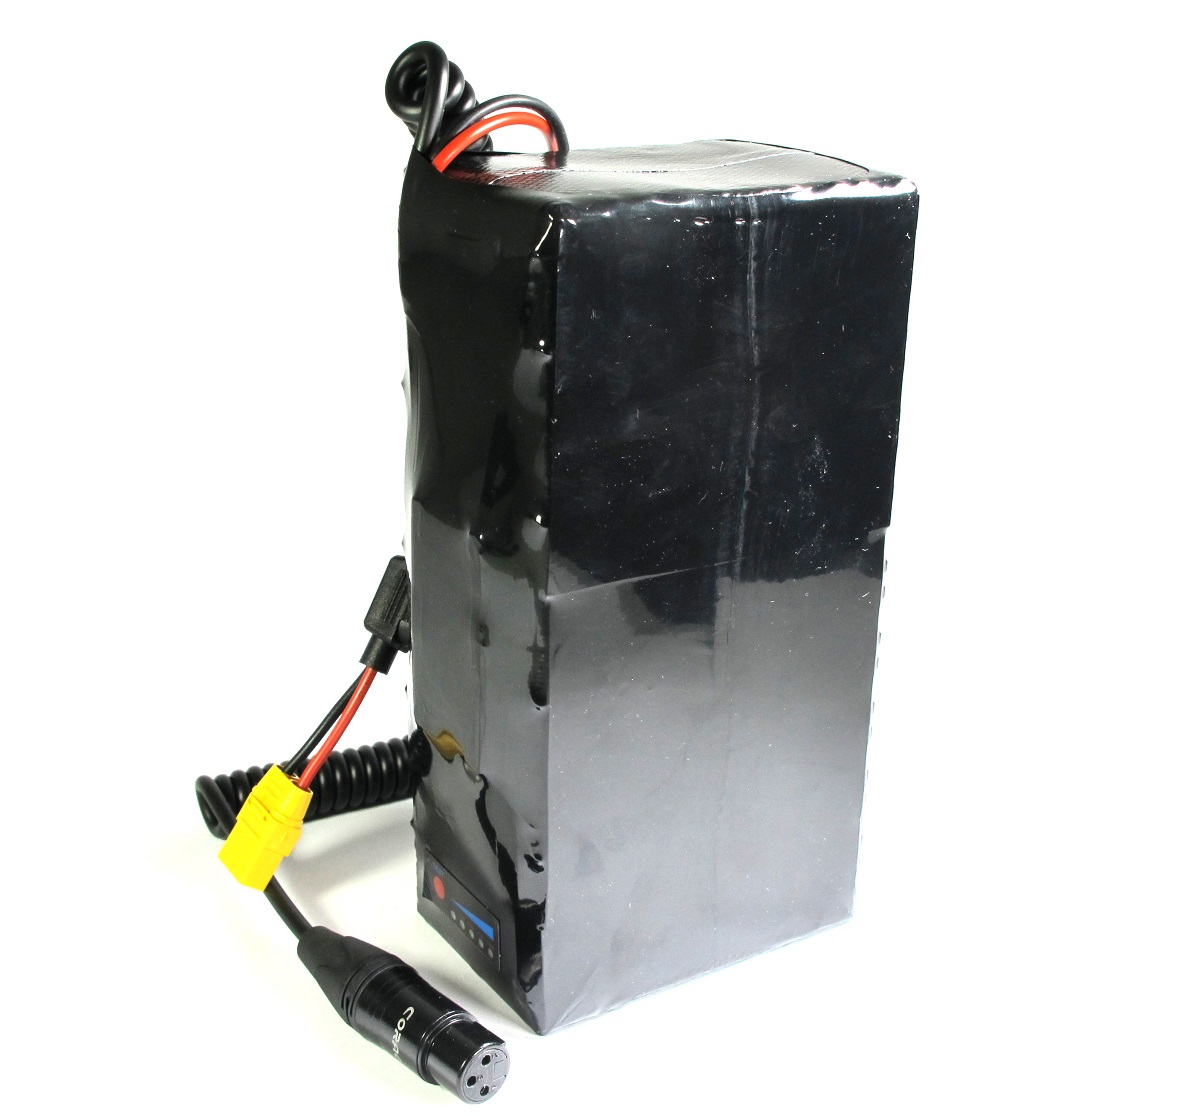 Softpack Battery 48V 10Ah 50E in Roswheel Bag